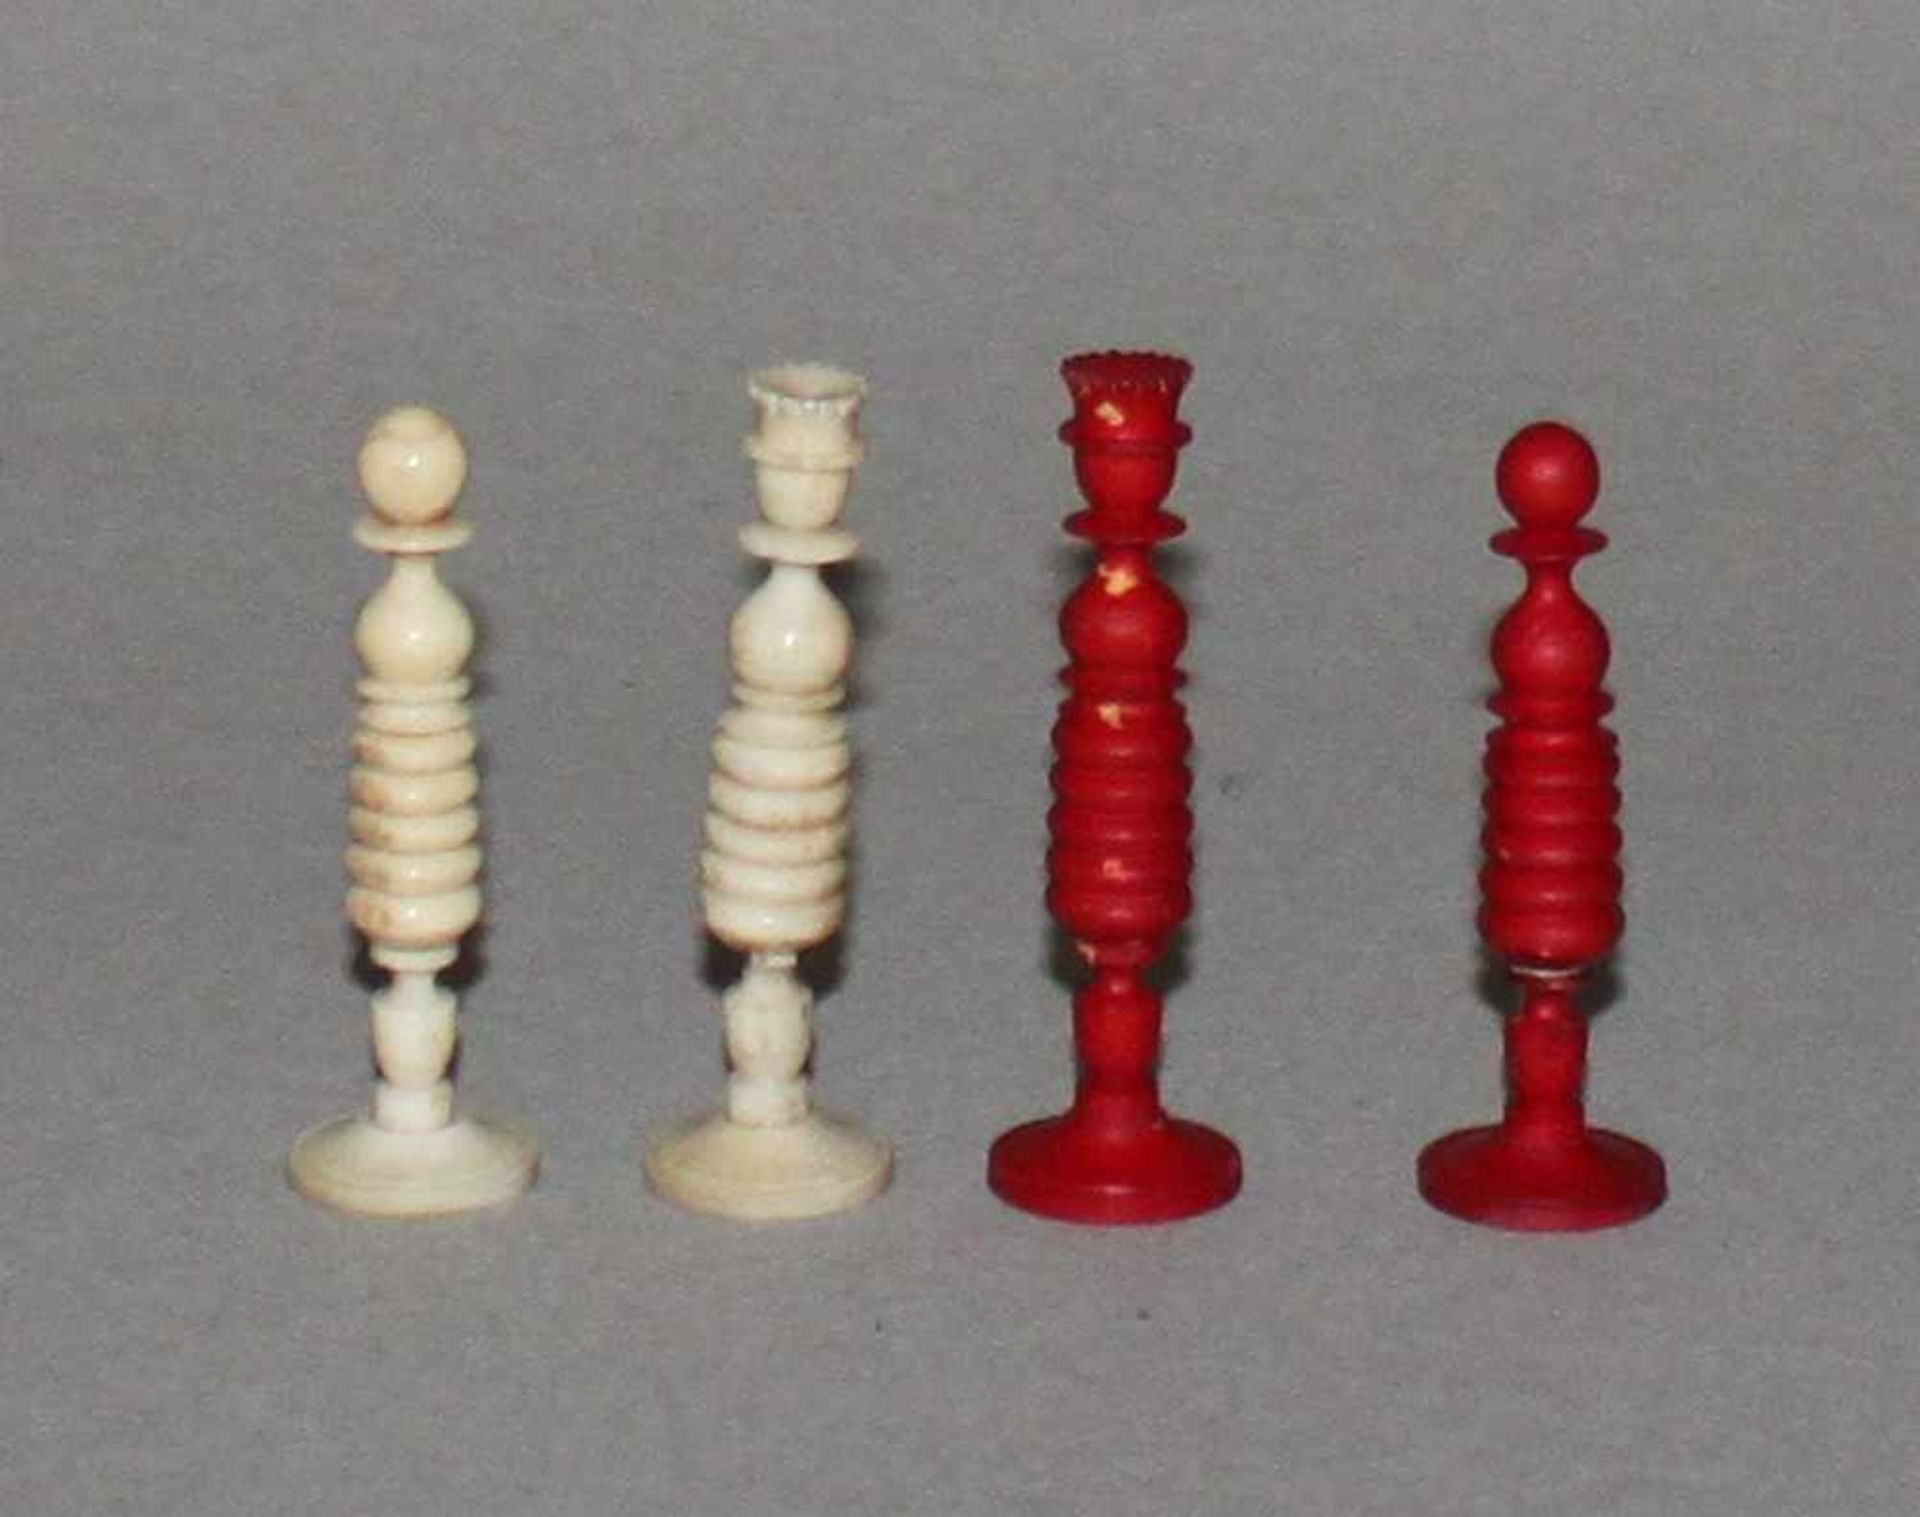 Europa. England. "Washington" - Schachfiguren aus Bein.Eine Partei in rot, die andere naturfarben.